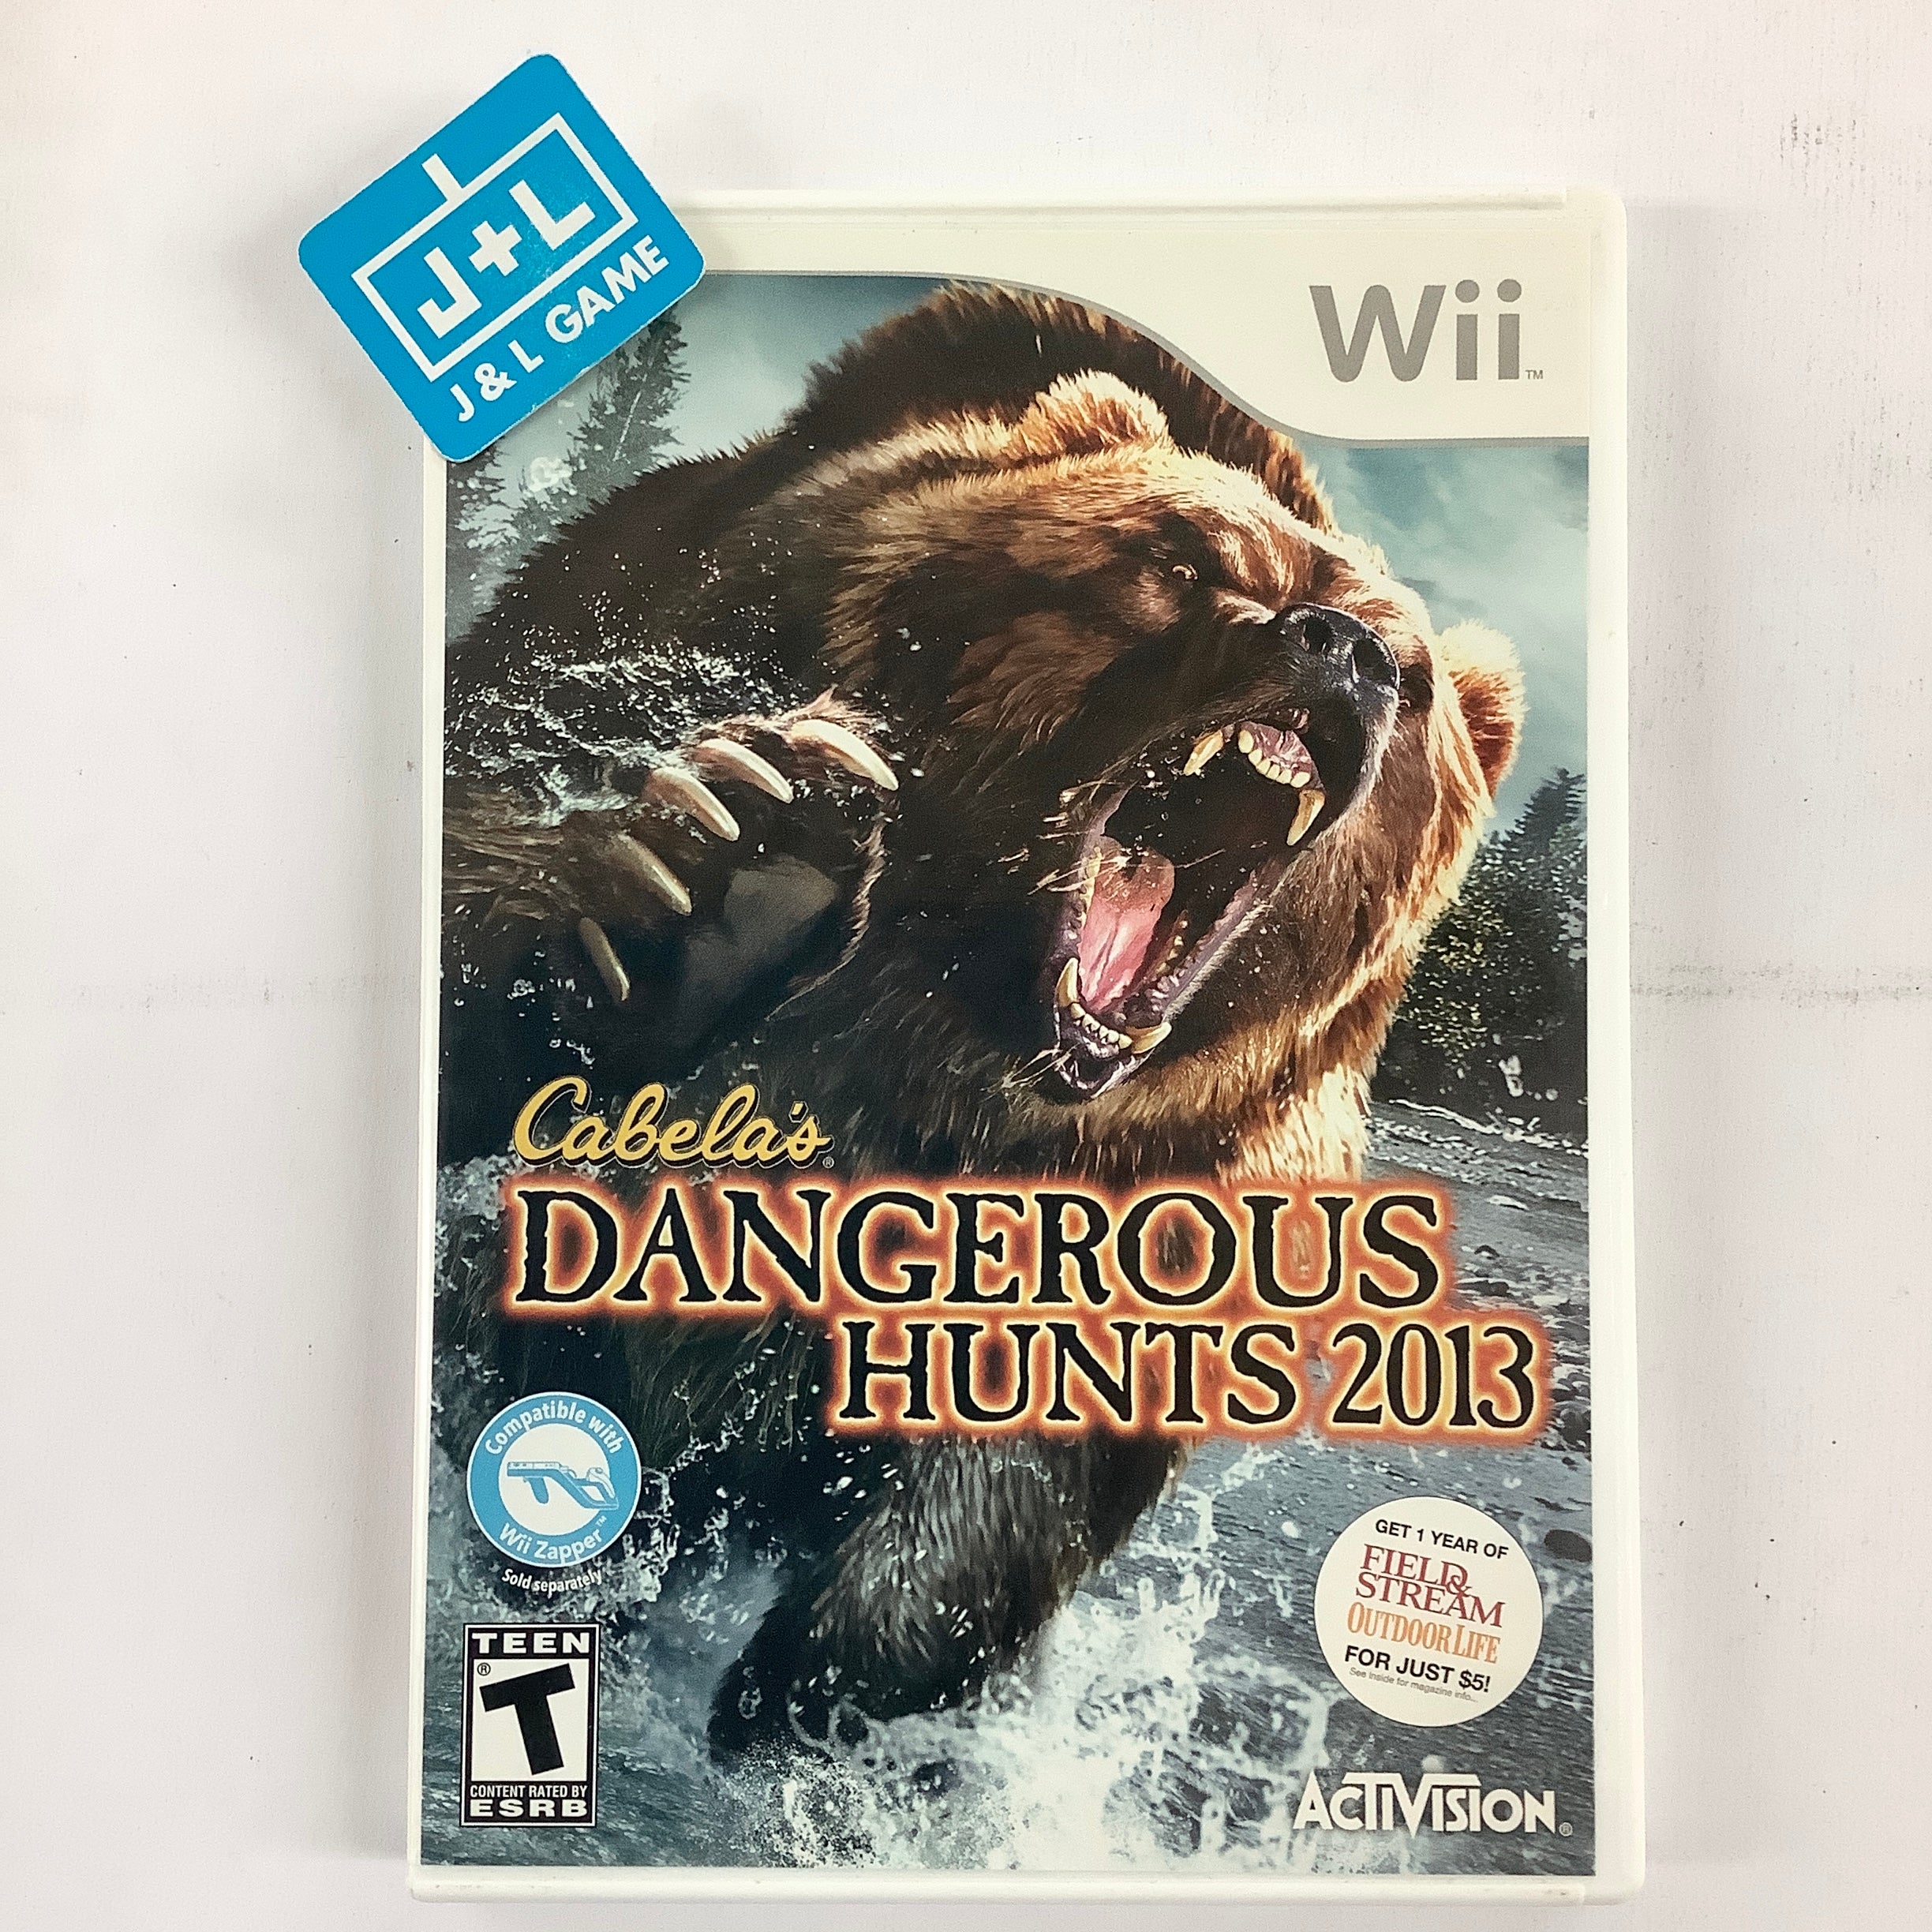 Cabelas Dangerous Hunts 2013 - PlayStation 3